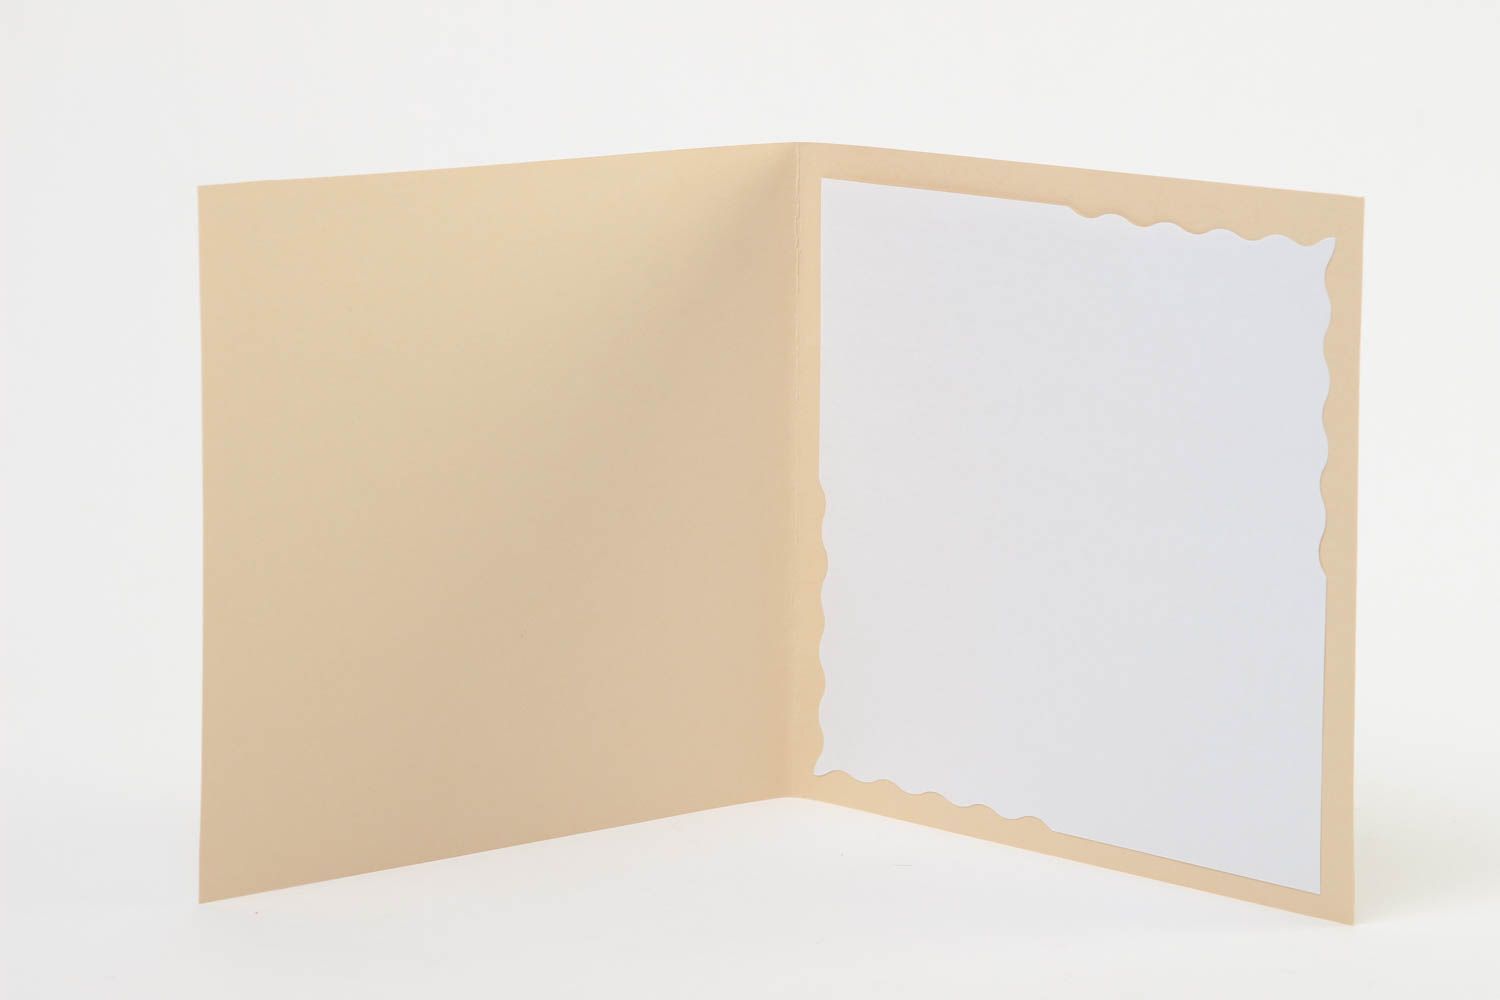 Schöne Grusskarten Scrapbook Karten handmade Papier Karten ungewöhnlich schön foto 3